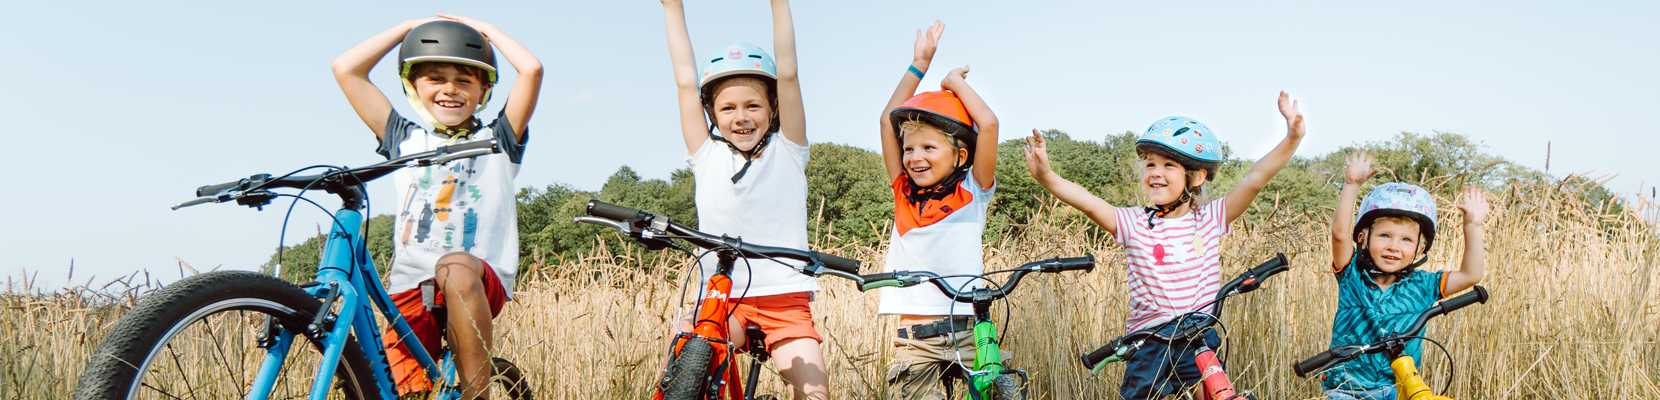 fröhliche Kinder auf bunten Fahrrädern vor Kornfeld